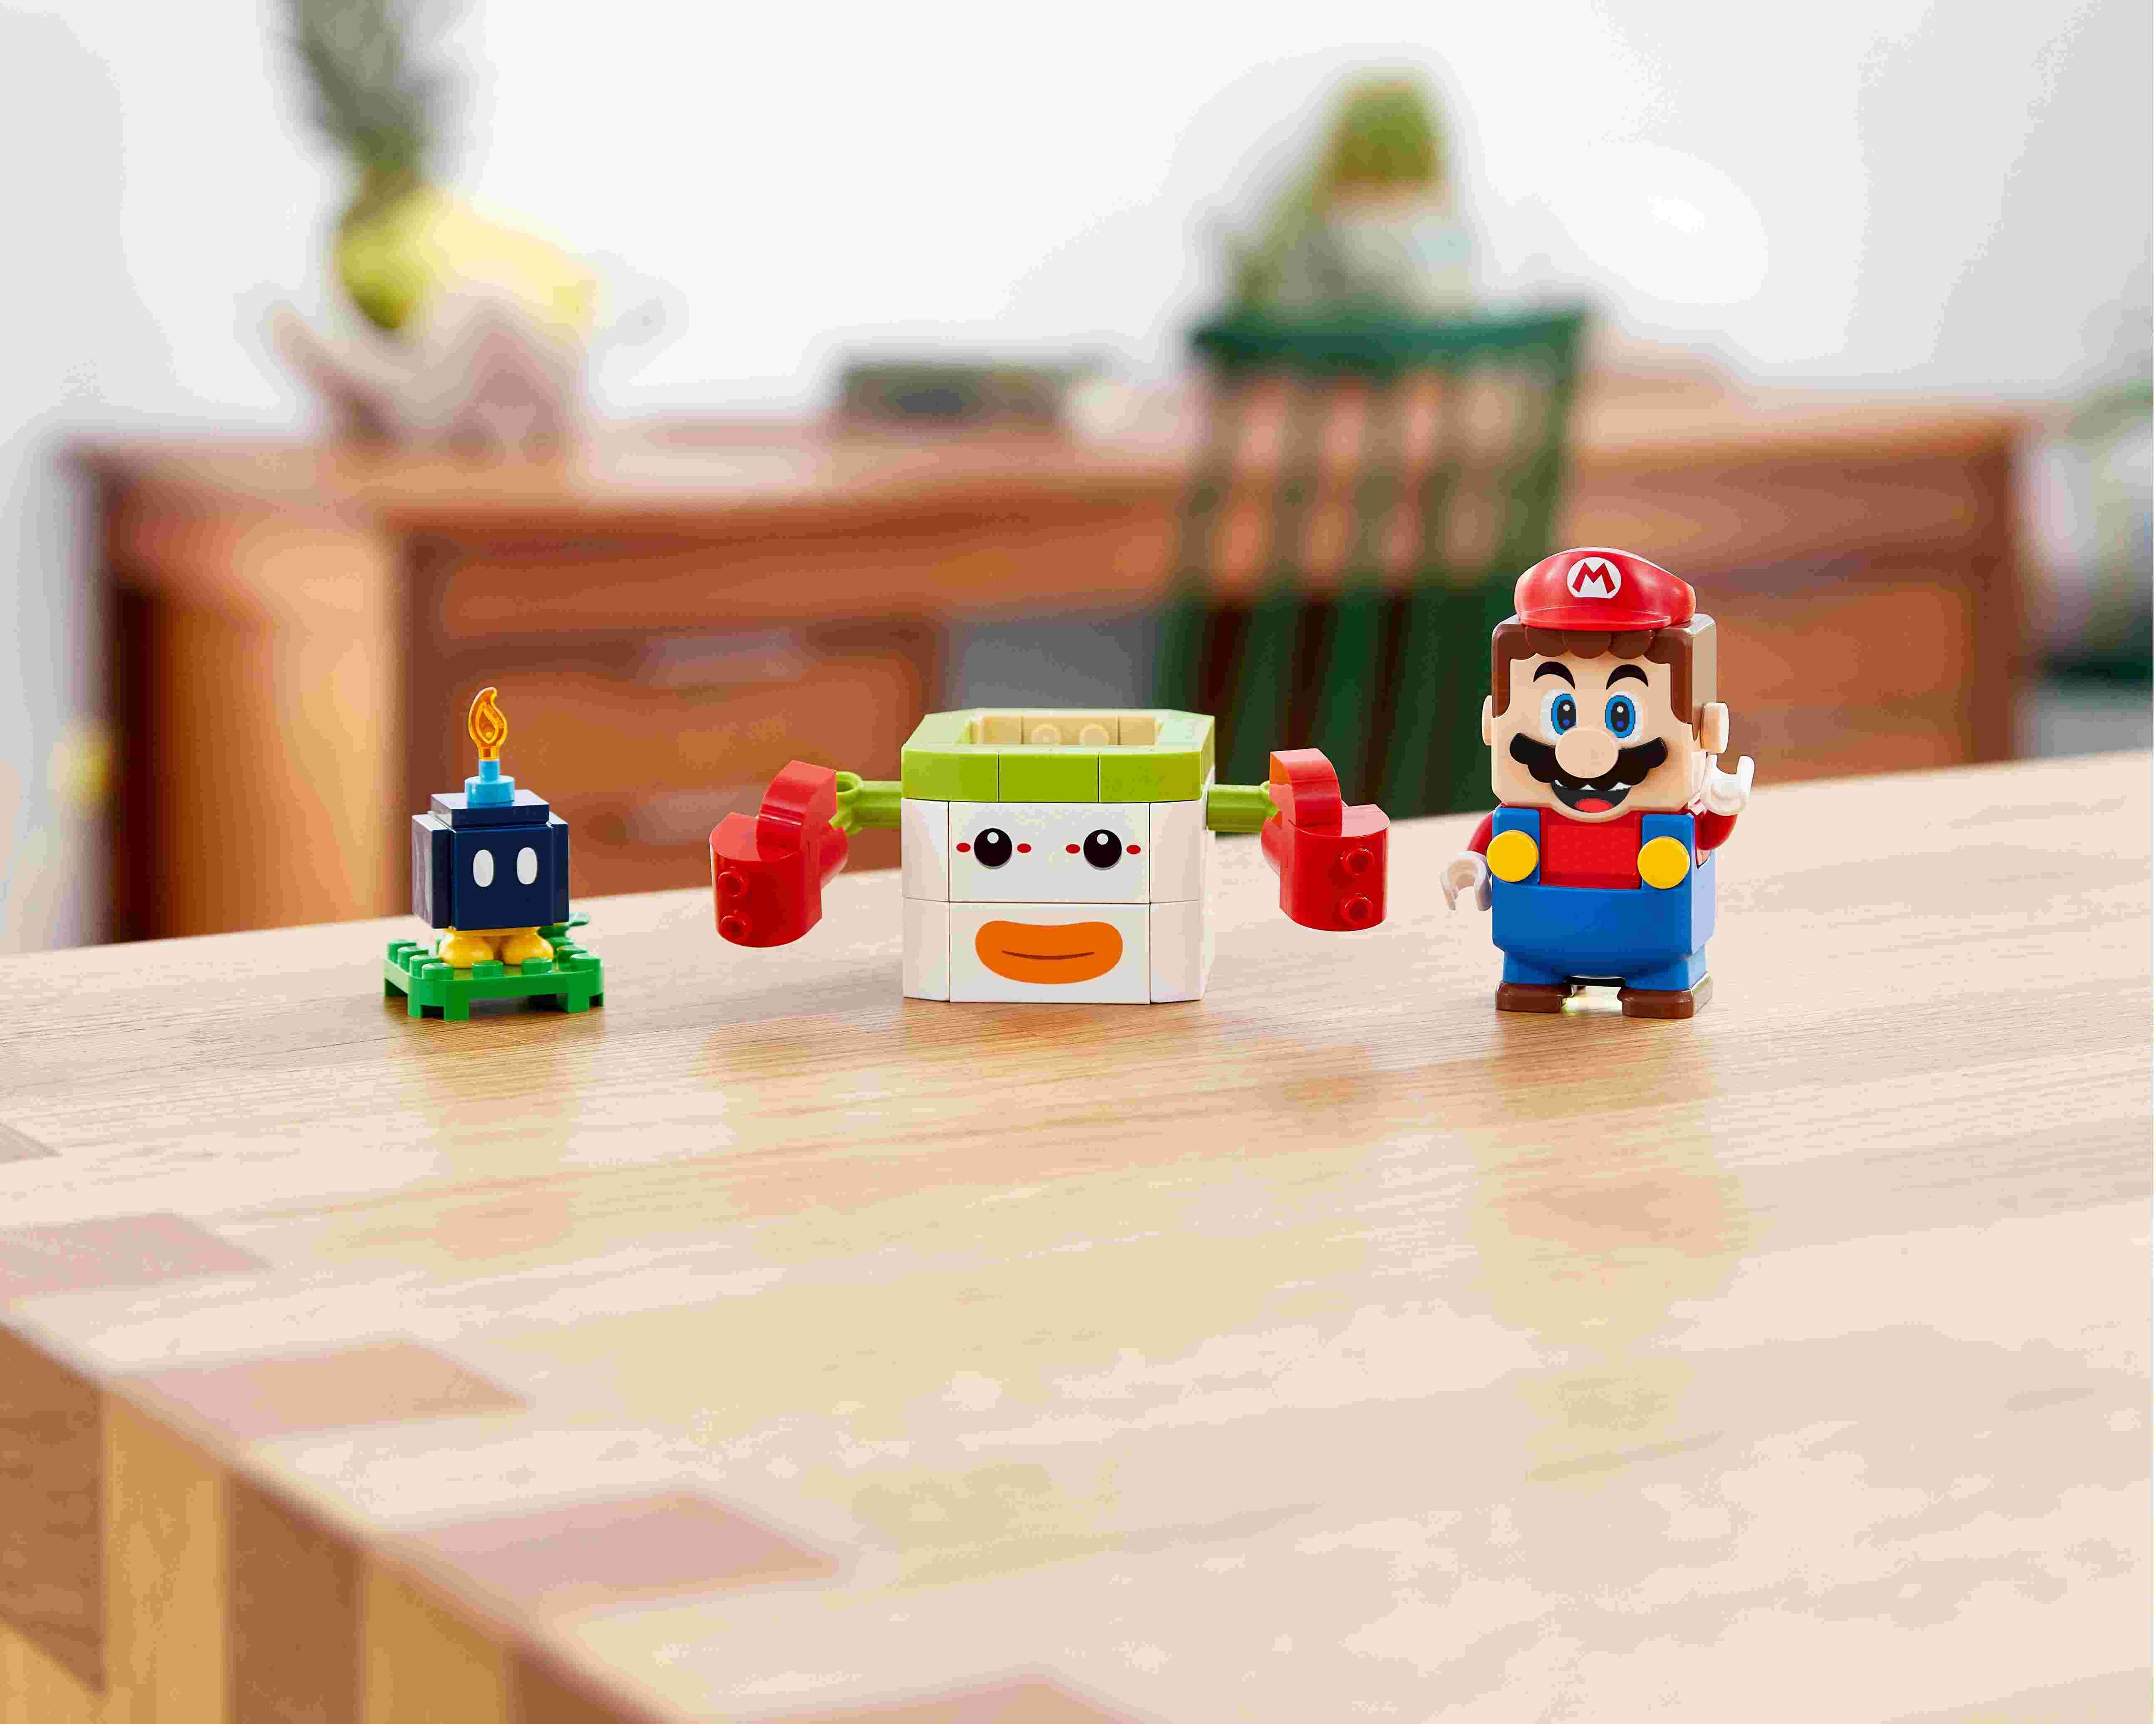 LEGO 71396 Super Mario Bowser Jr‘s Clown Kutsche – Erweiterungsset